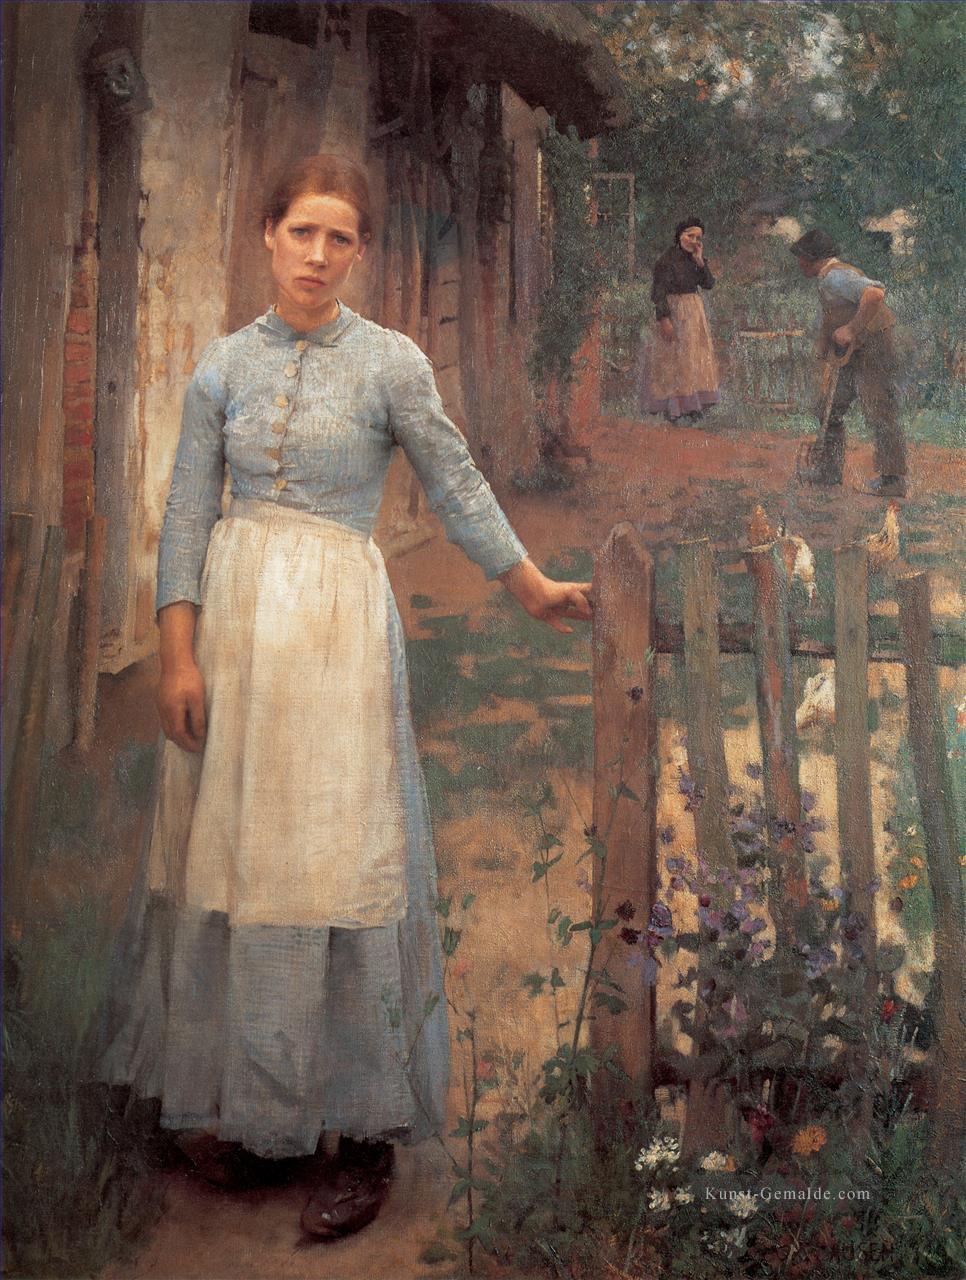 Das Mädchen am Tor moderne Bauern impressionistischen Sir George Clausen Ölgemälde